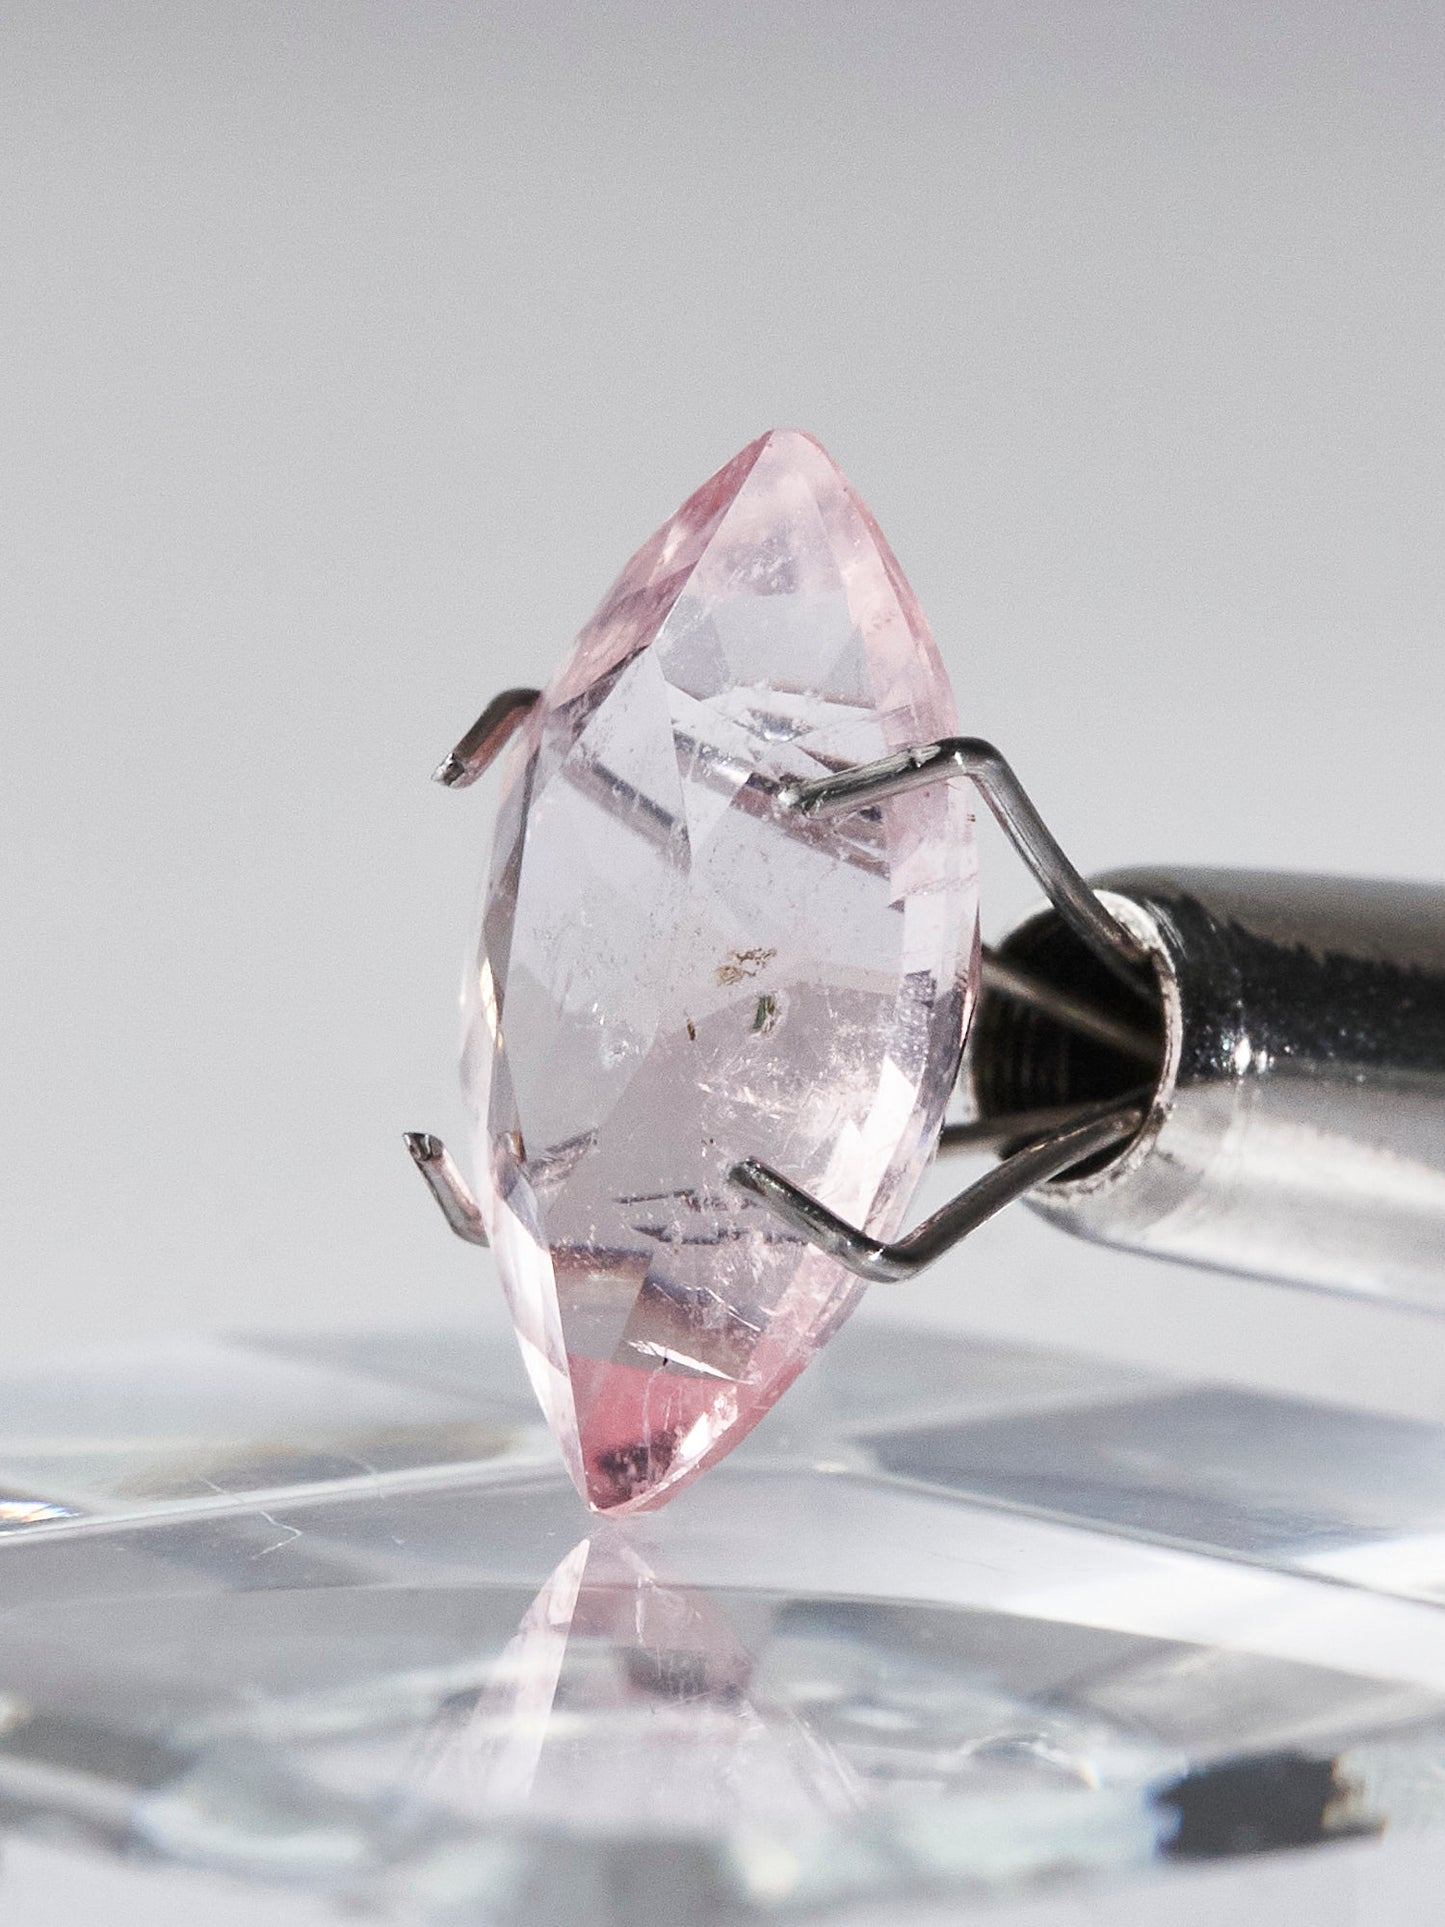 AA Pink Morganite Gemstones